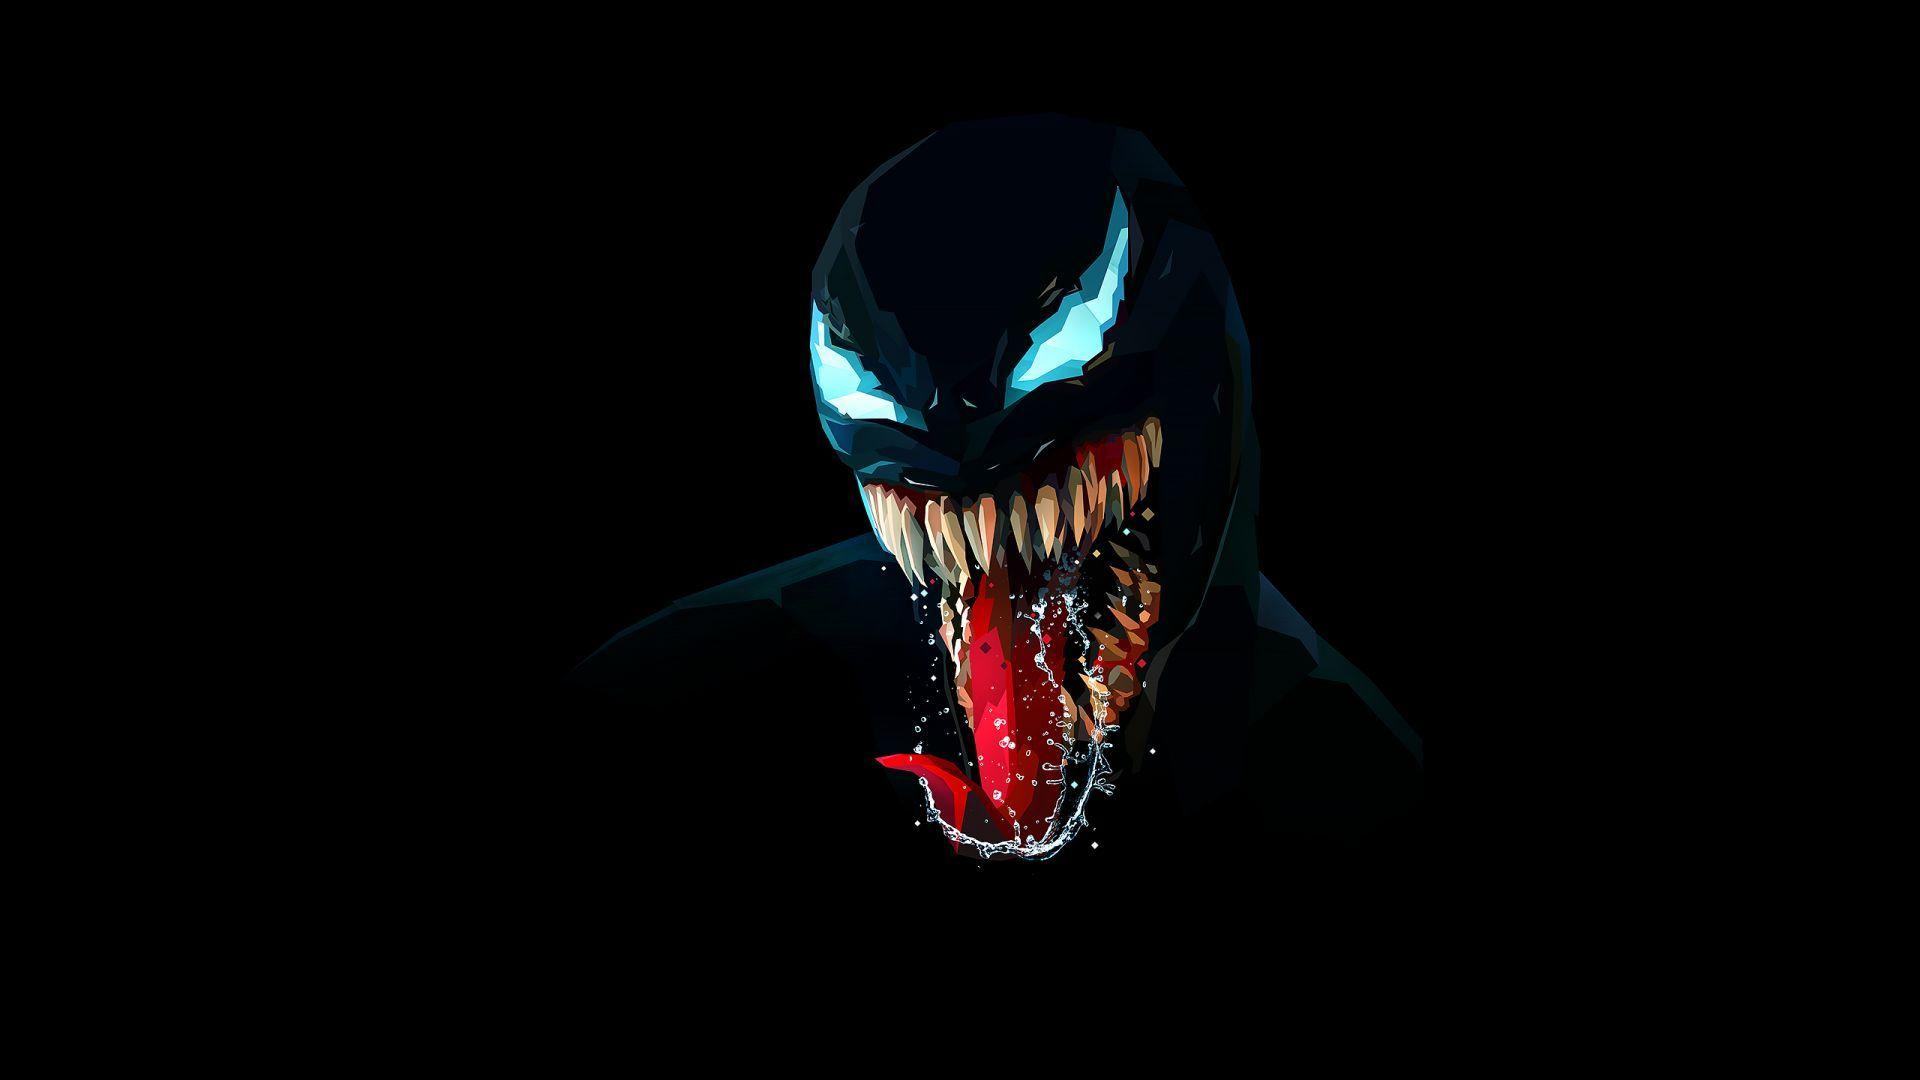 Download wallpaper of Venom, Artwork, Minimal, Dark background